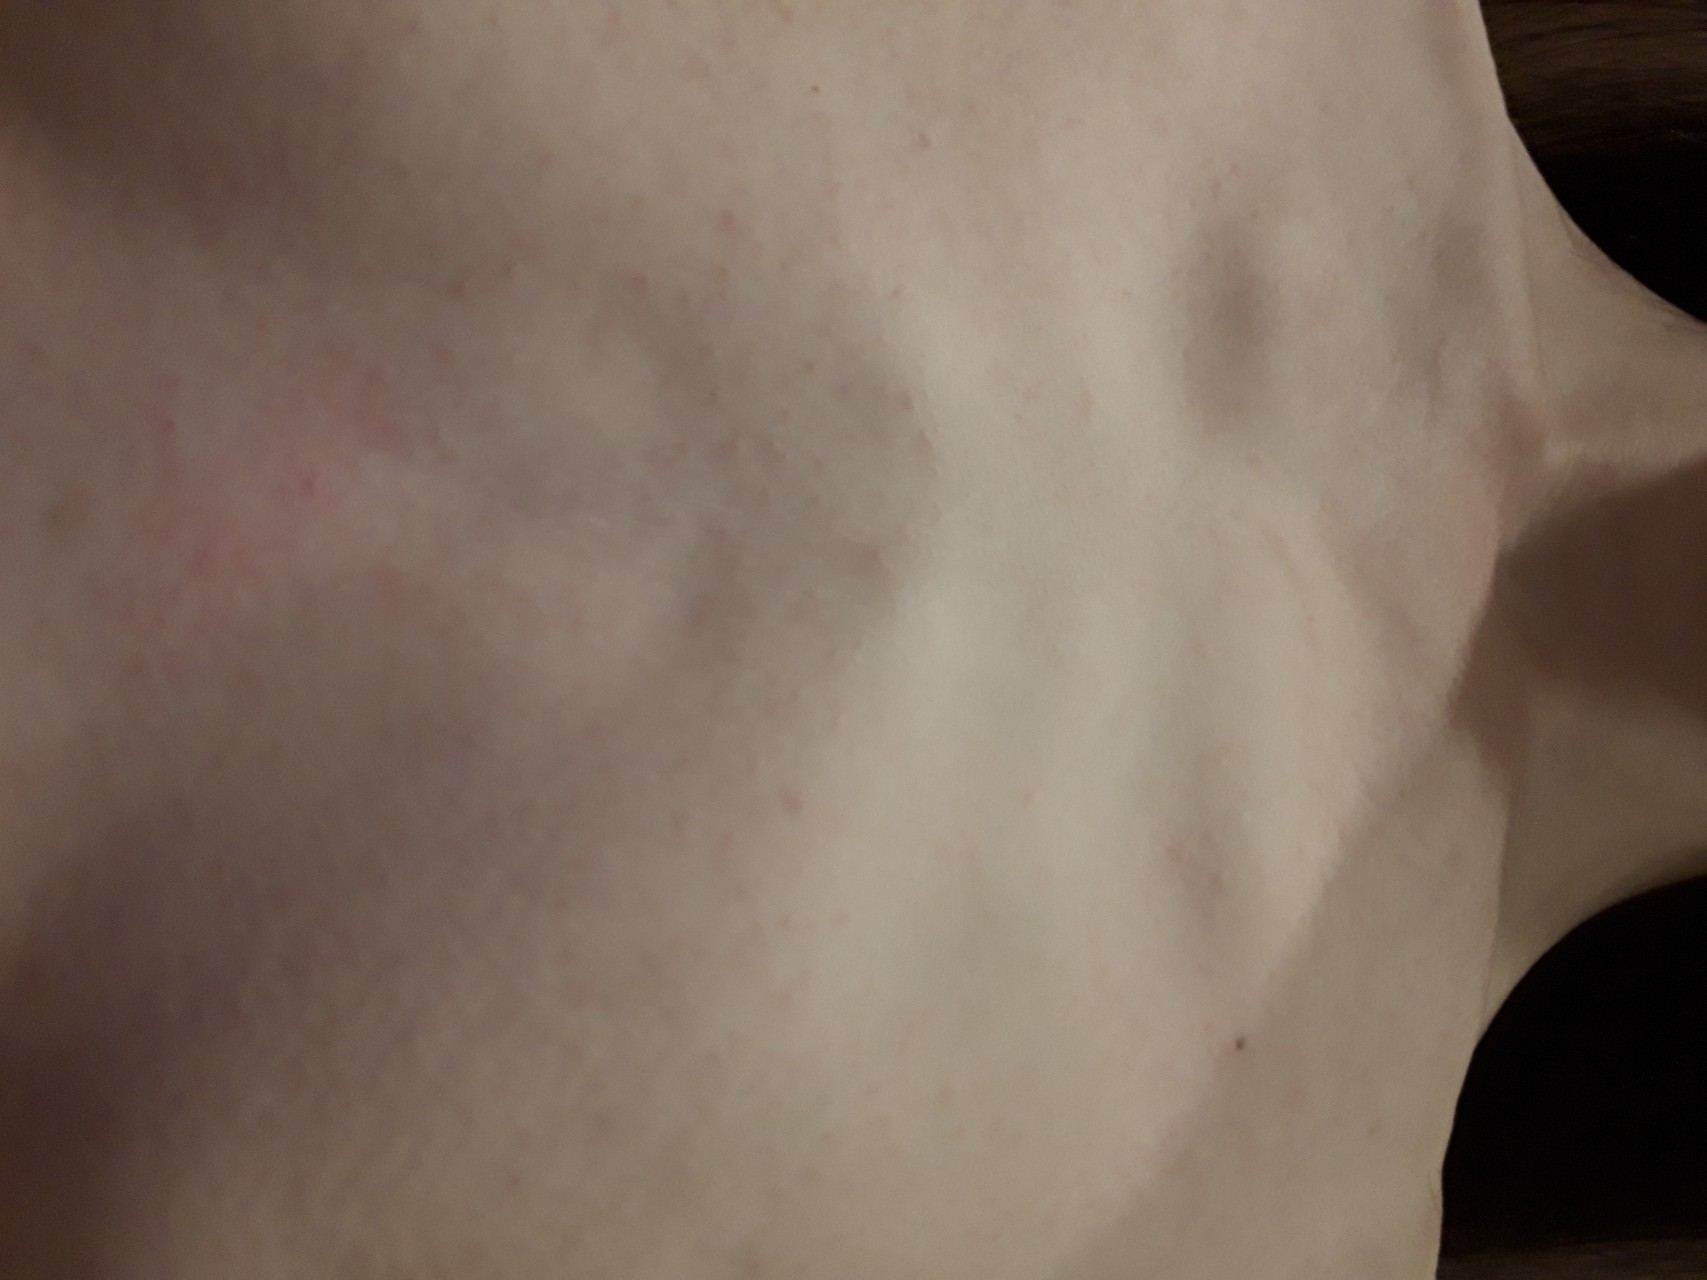 красная сыпь на груди у женщин фото 99